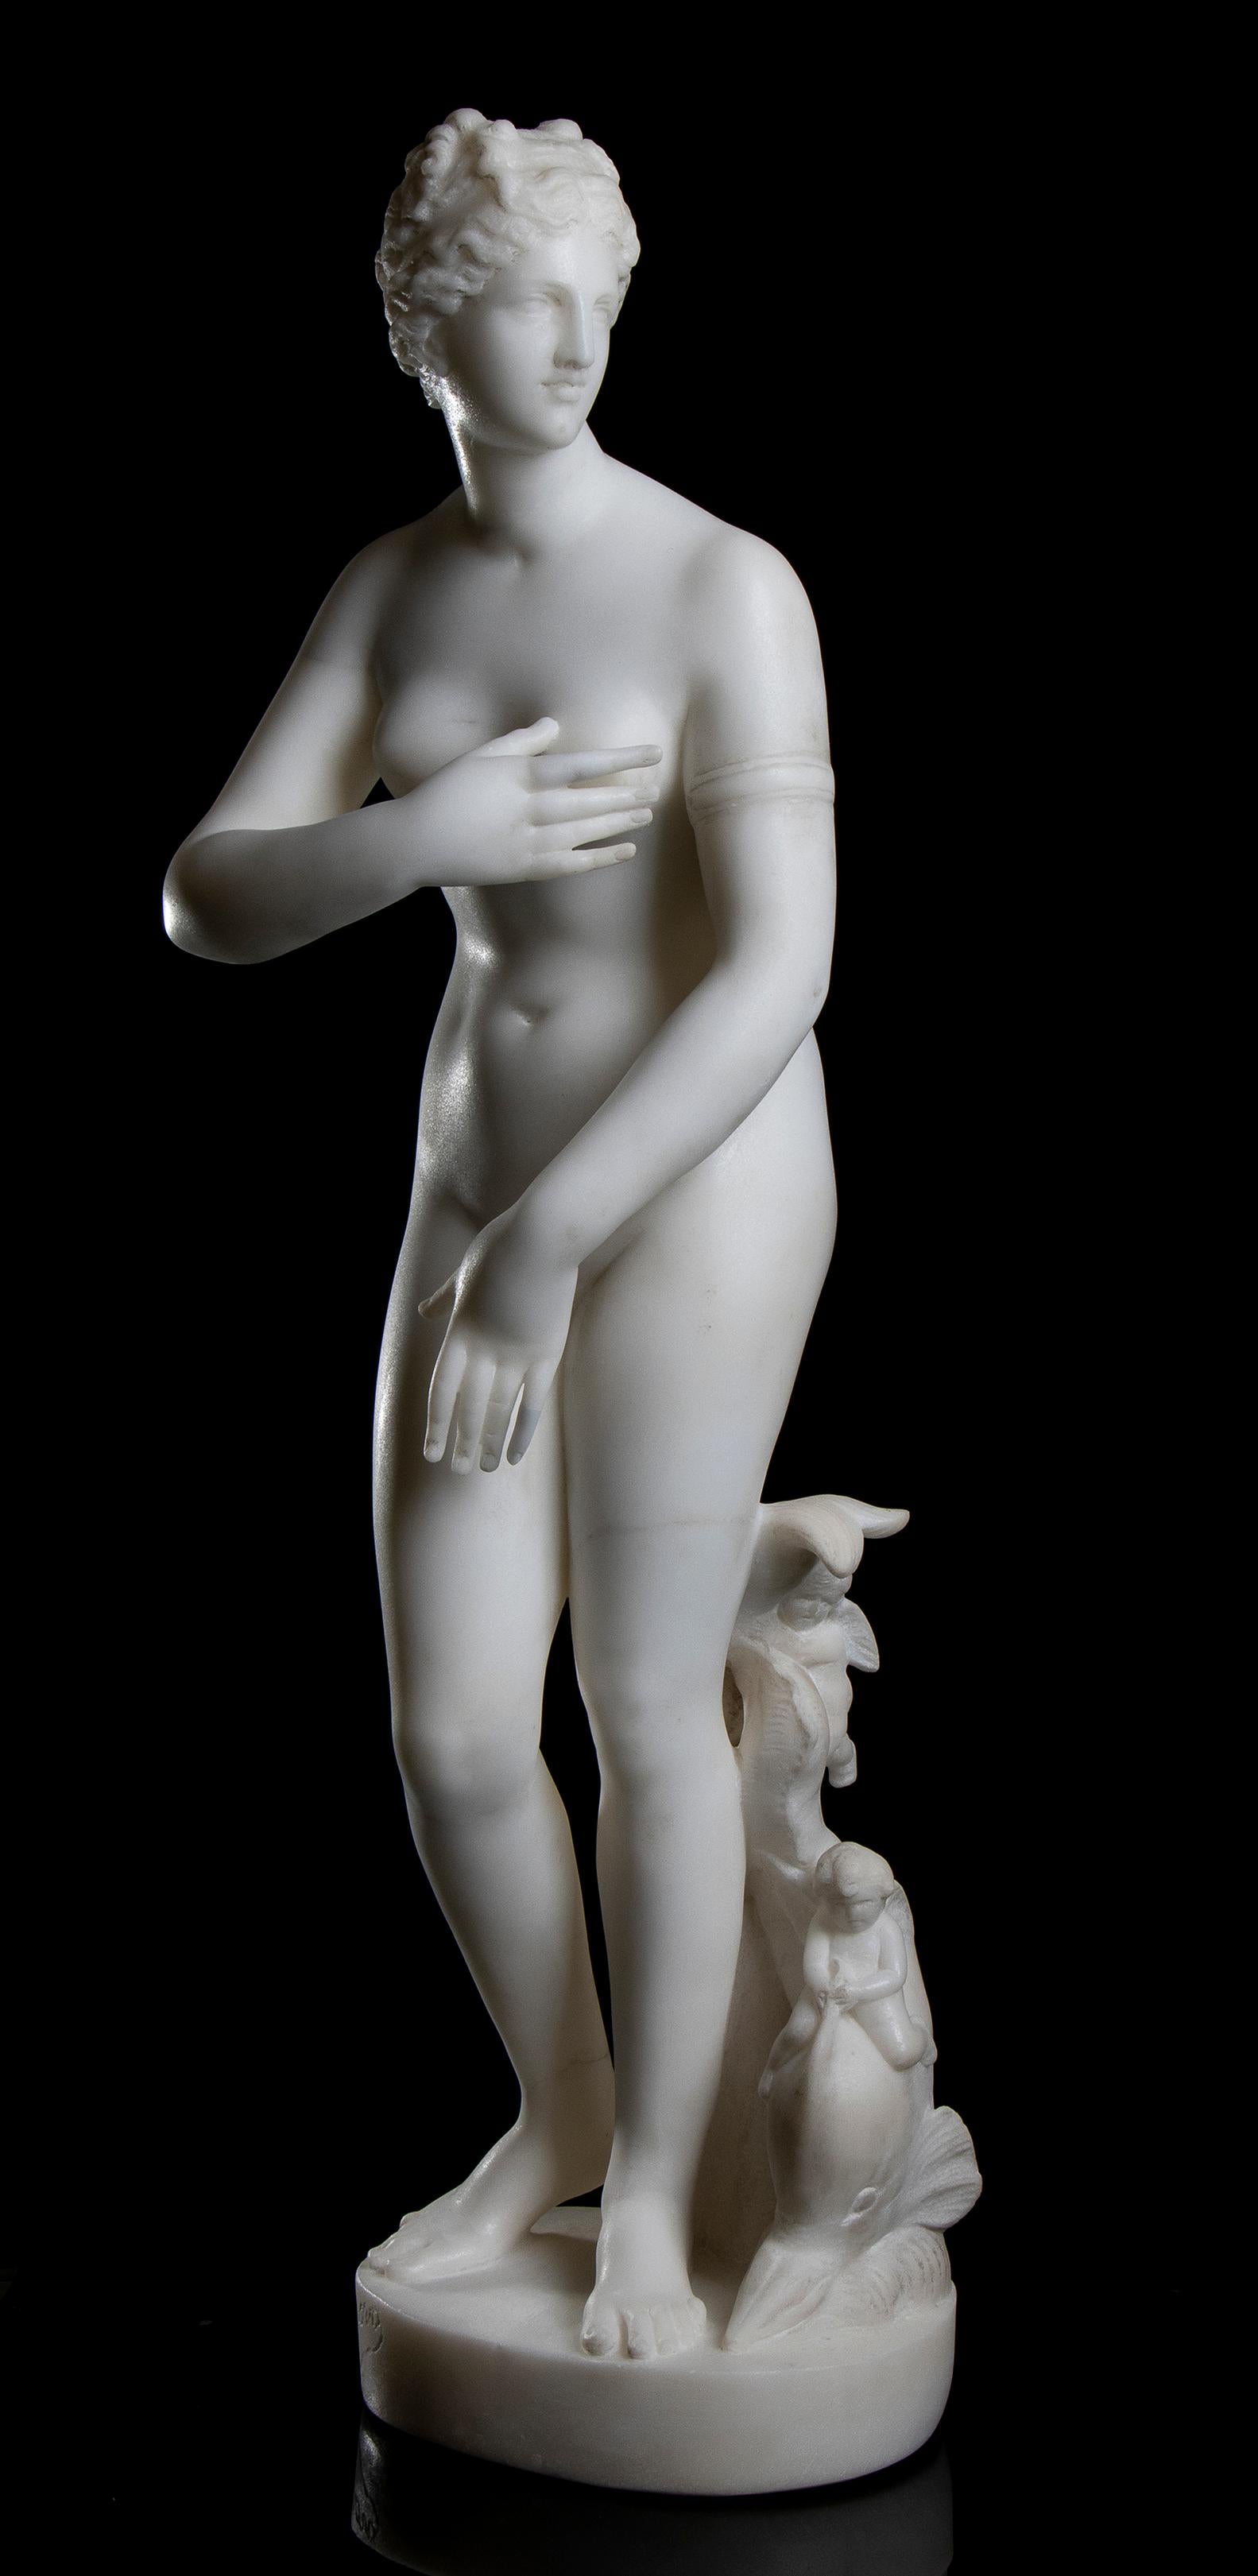 Une intéressante et belle sculpture de Vénus, connue sous le nom de Vénus de Médicis, représente la déesse dans une pose fugitive, momentanée, comme si elle était surprise en train d'émerger de la mer, ce à quoi le dauphin à ses pieds fait